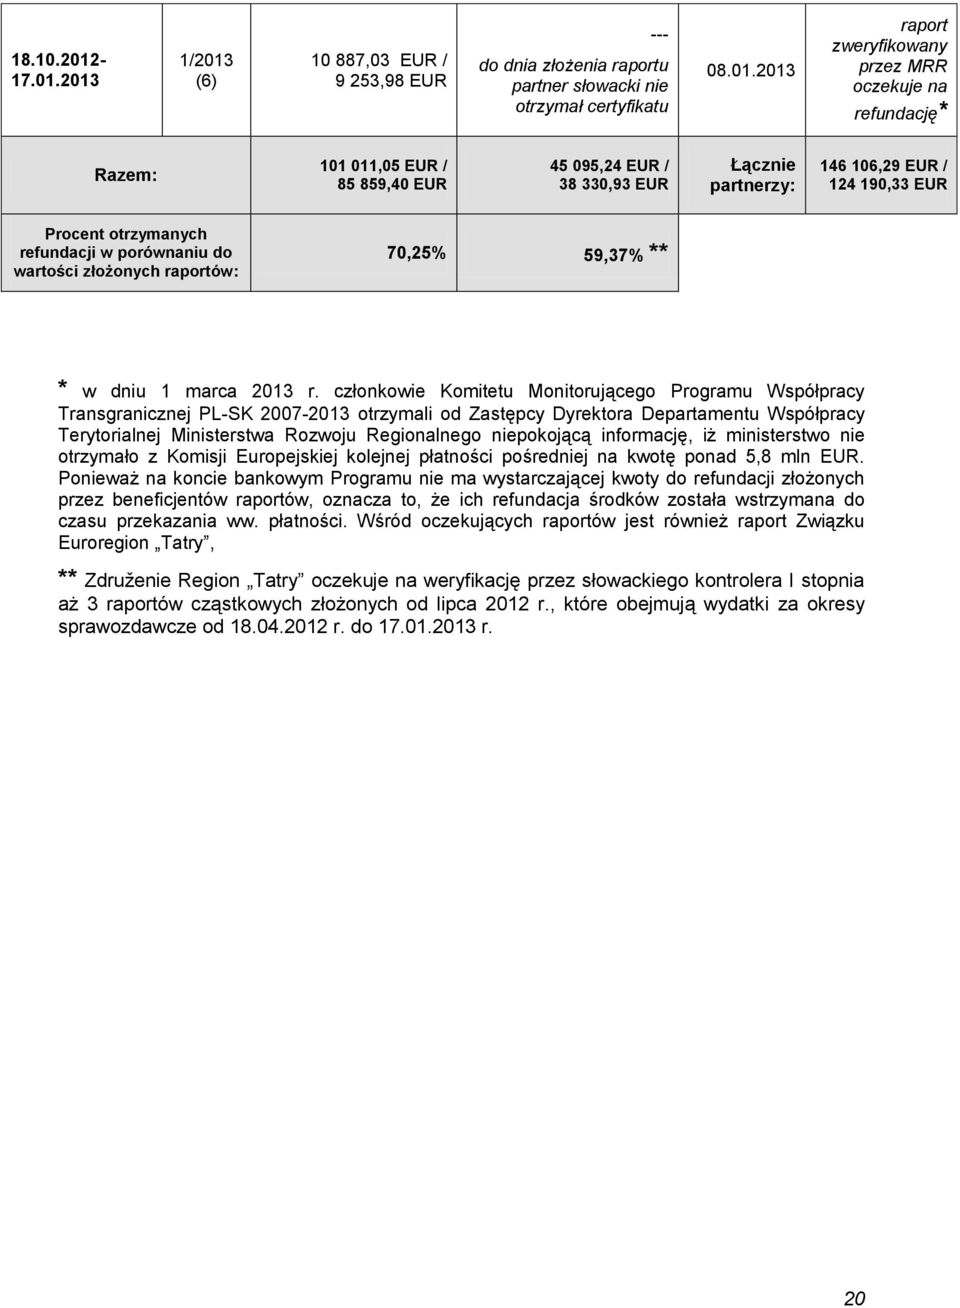 2013 1/2013 (6) 10 887,03 EUR / 9 253,98 EUR --- do dnia złożenia raportu partner słowacki nie otrzymał certyfikatu 08.01.2013 raport zweryfikowany przez MRR oczekuje na refundację* Razem: 101 011,05